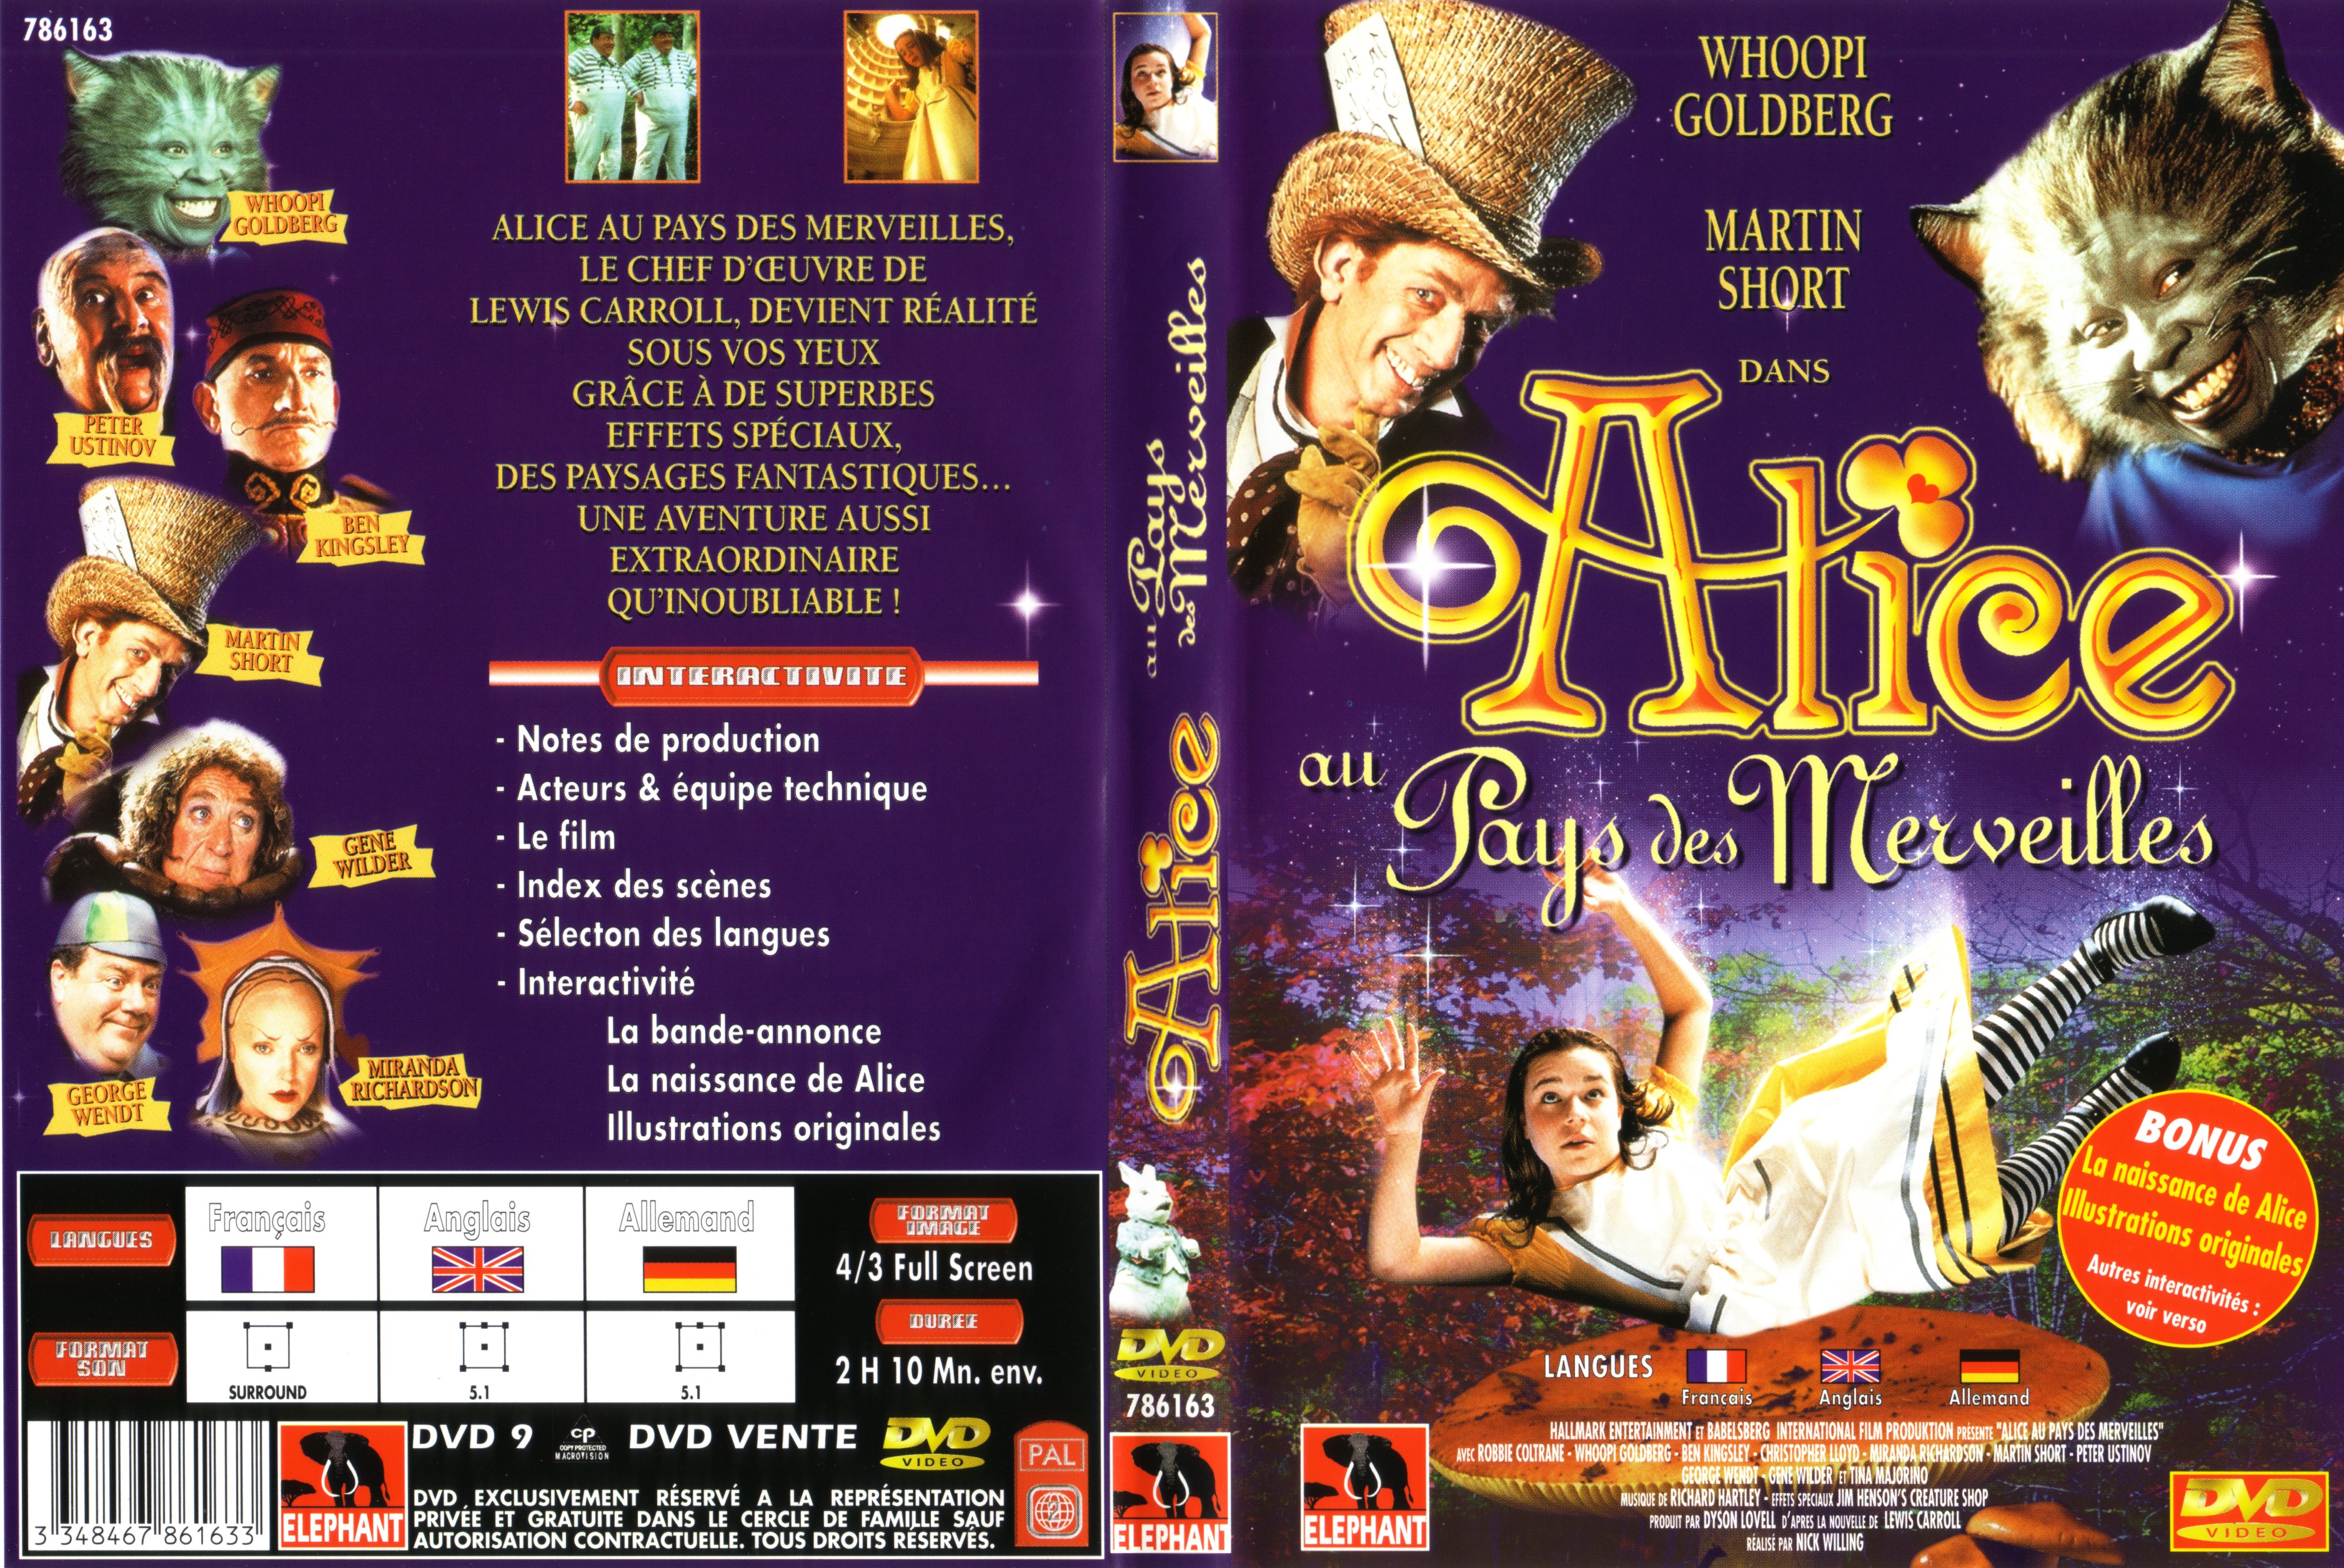 Jaquette DVD Alice au pays des merveilles Le Film